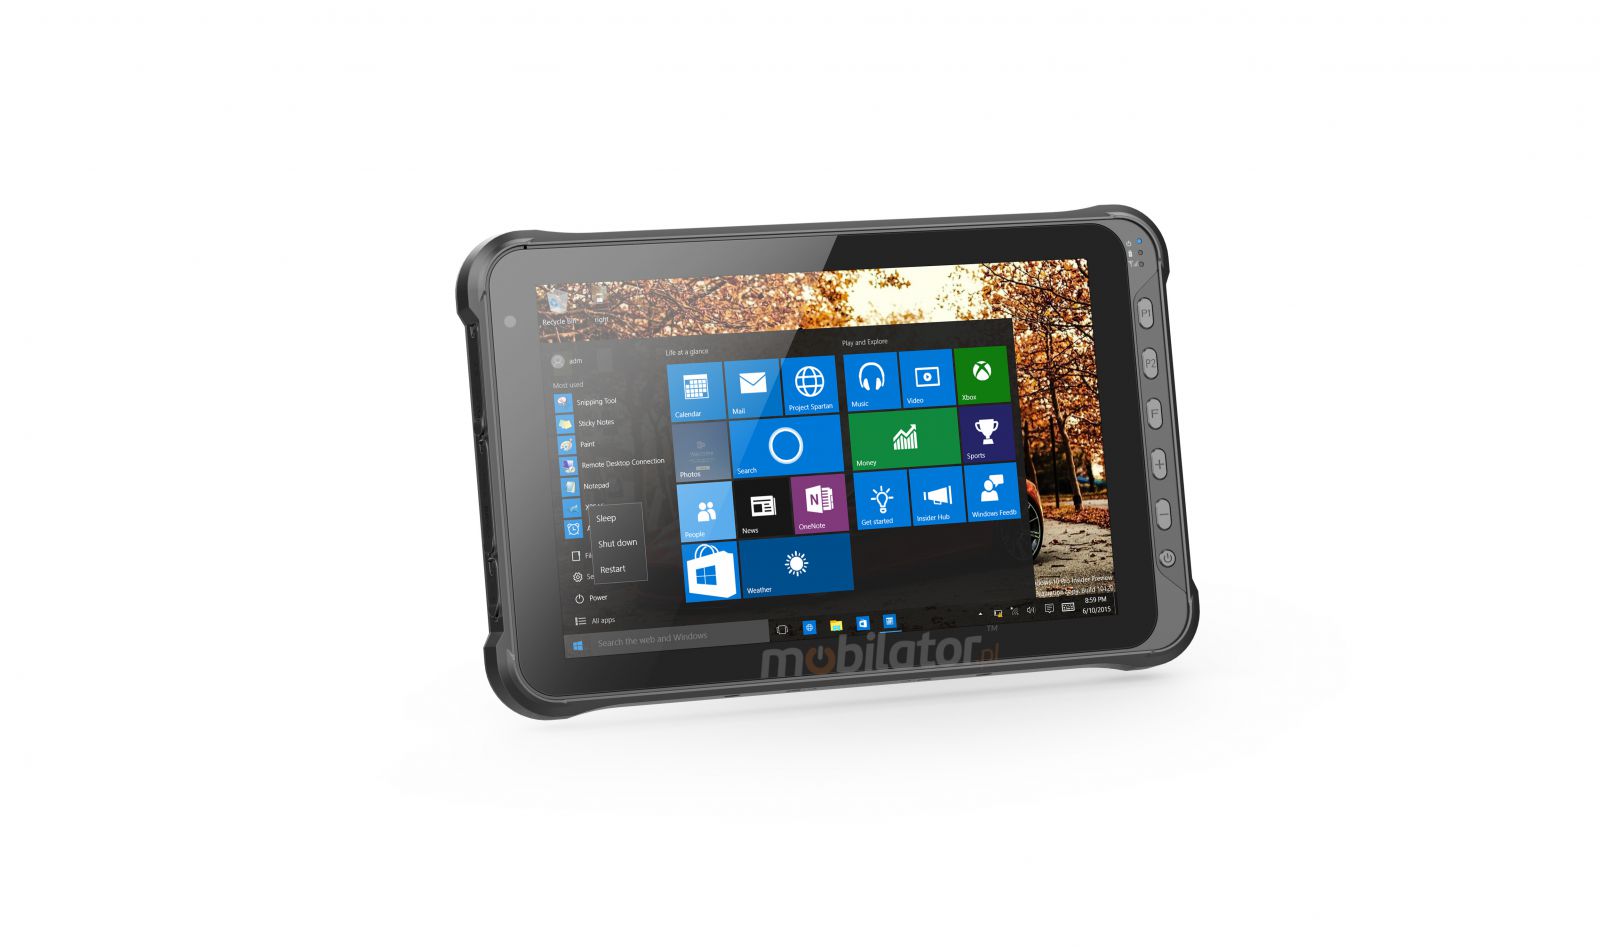 Emdoor I15HH v.15 - Przemysowy, wielozadaniowy tablet z Windows 10 PRO, BT 4.2, skanerem UHF RFID i kodw 1D, 4G, 4GB RAM pamici, dyskiem 128G